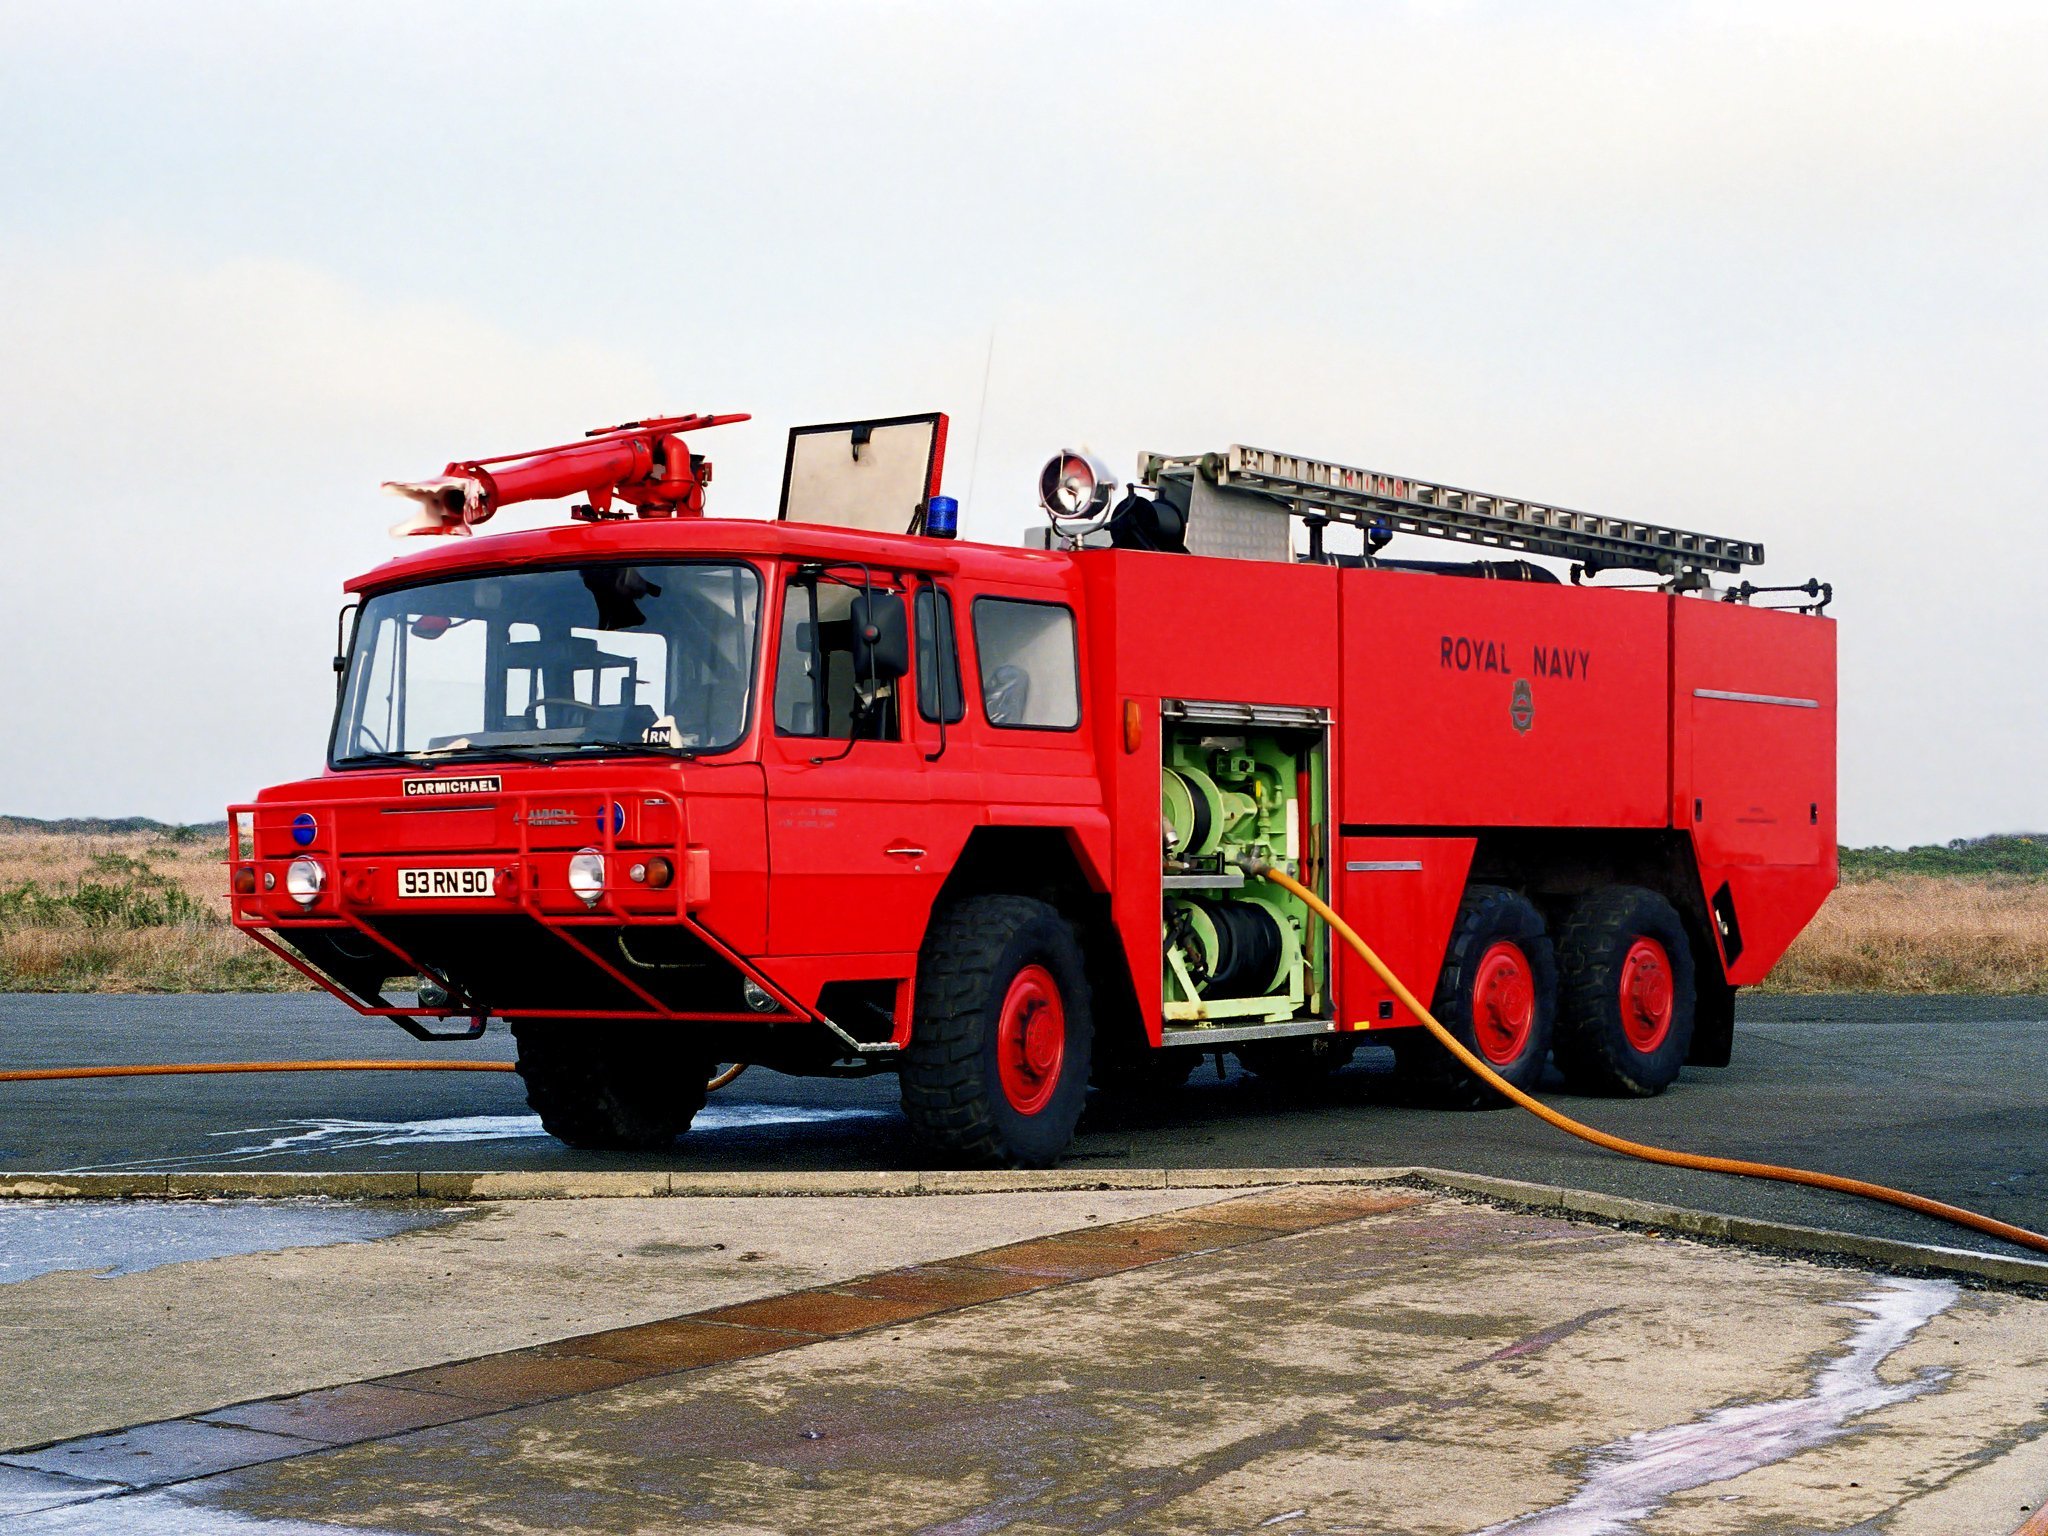 Пожарный автомобиль баз. СПМ пожарная машина. АПС пожарная машина Урал. Пожарная машина Scania p300. Ал-50 (КАМАЗ 65115) пожарная техника.